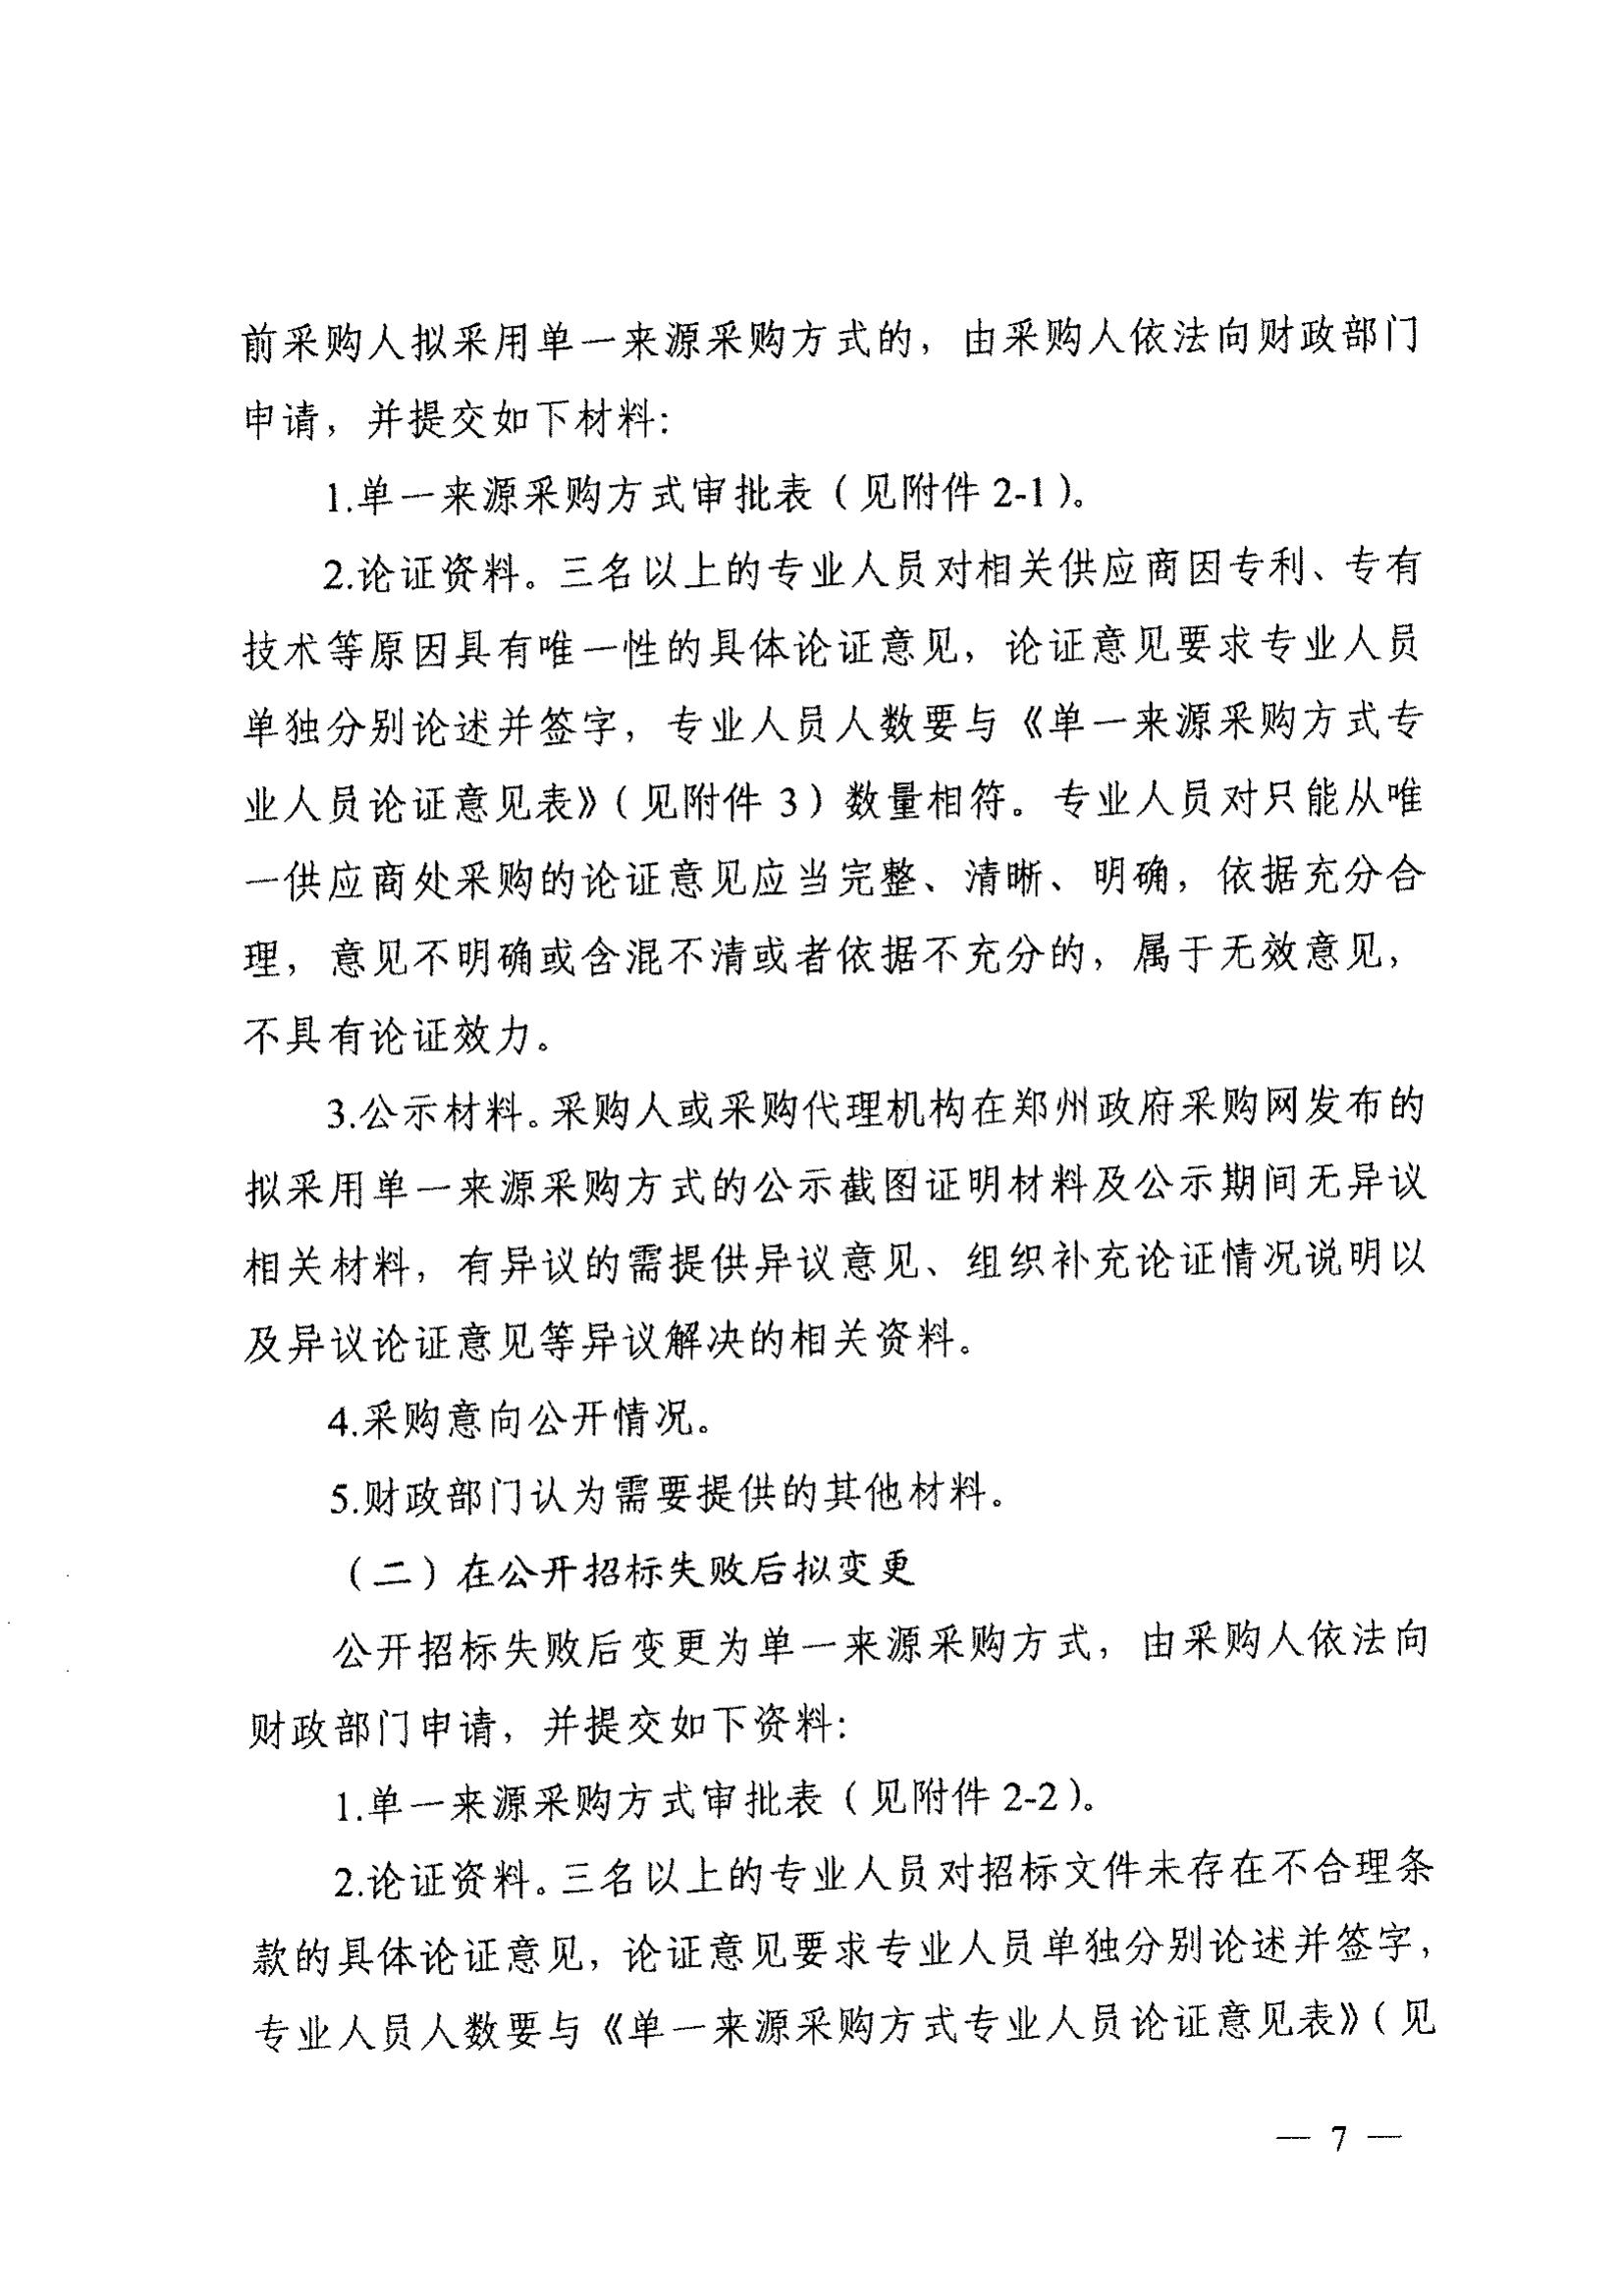 登封市财政局关于转发《郑州市财政局关于规范市级单一来源采购方式有关事项的通知》通知(图9)